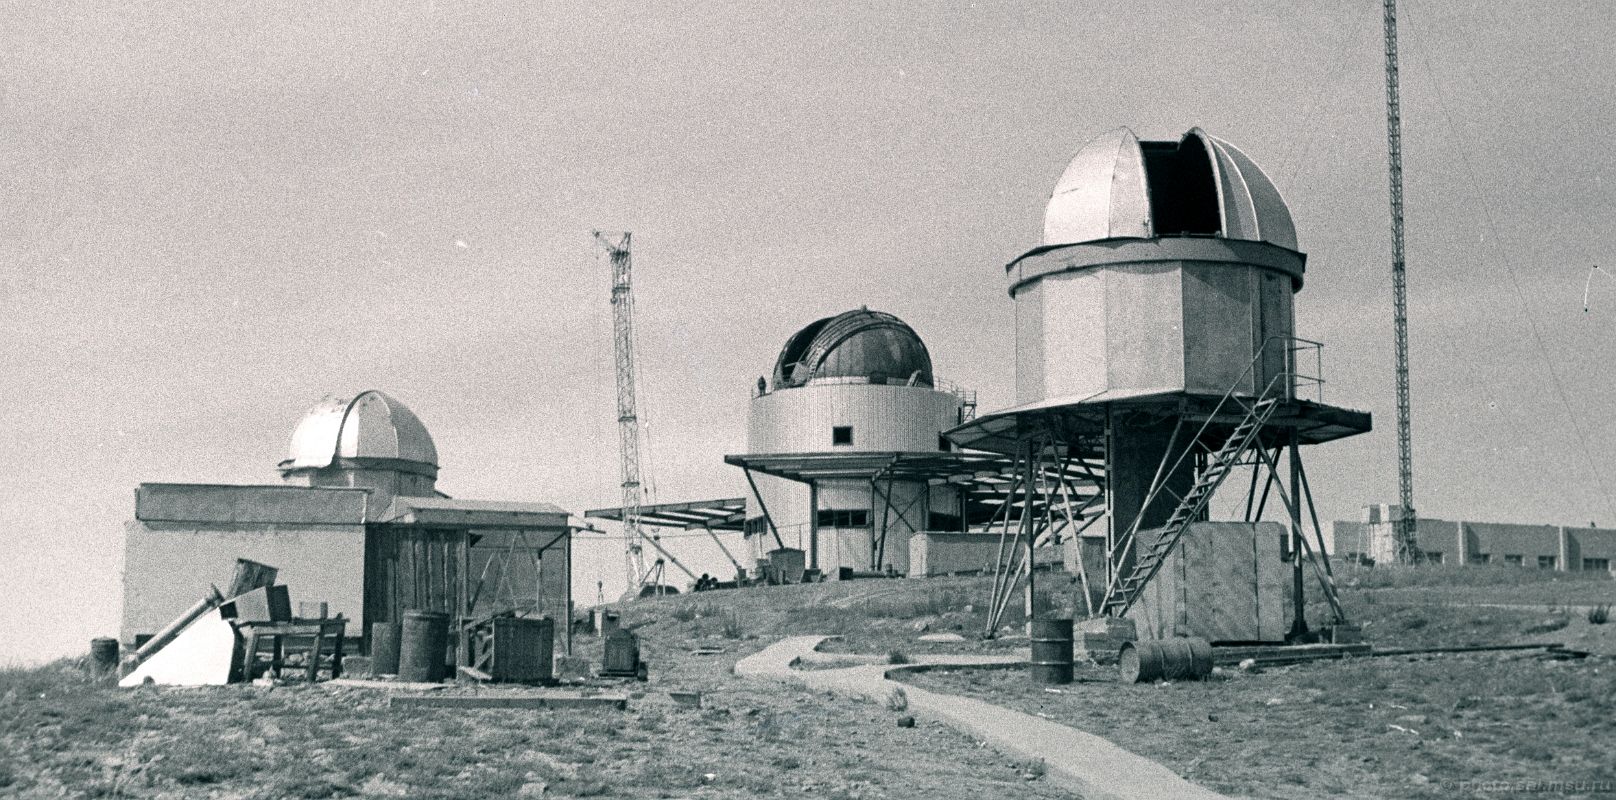 Майданакская высокогорная обсерватория фото